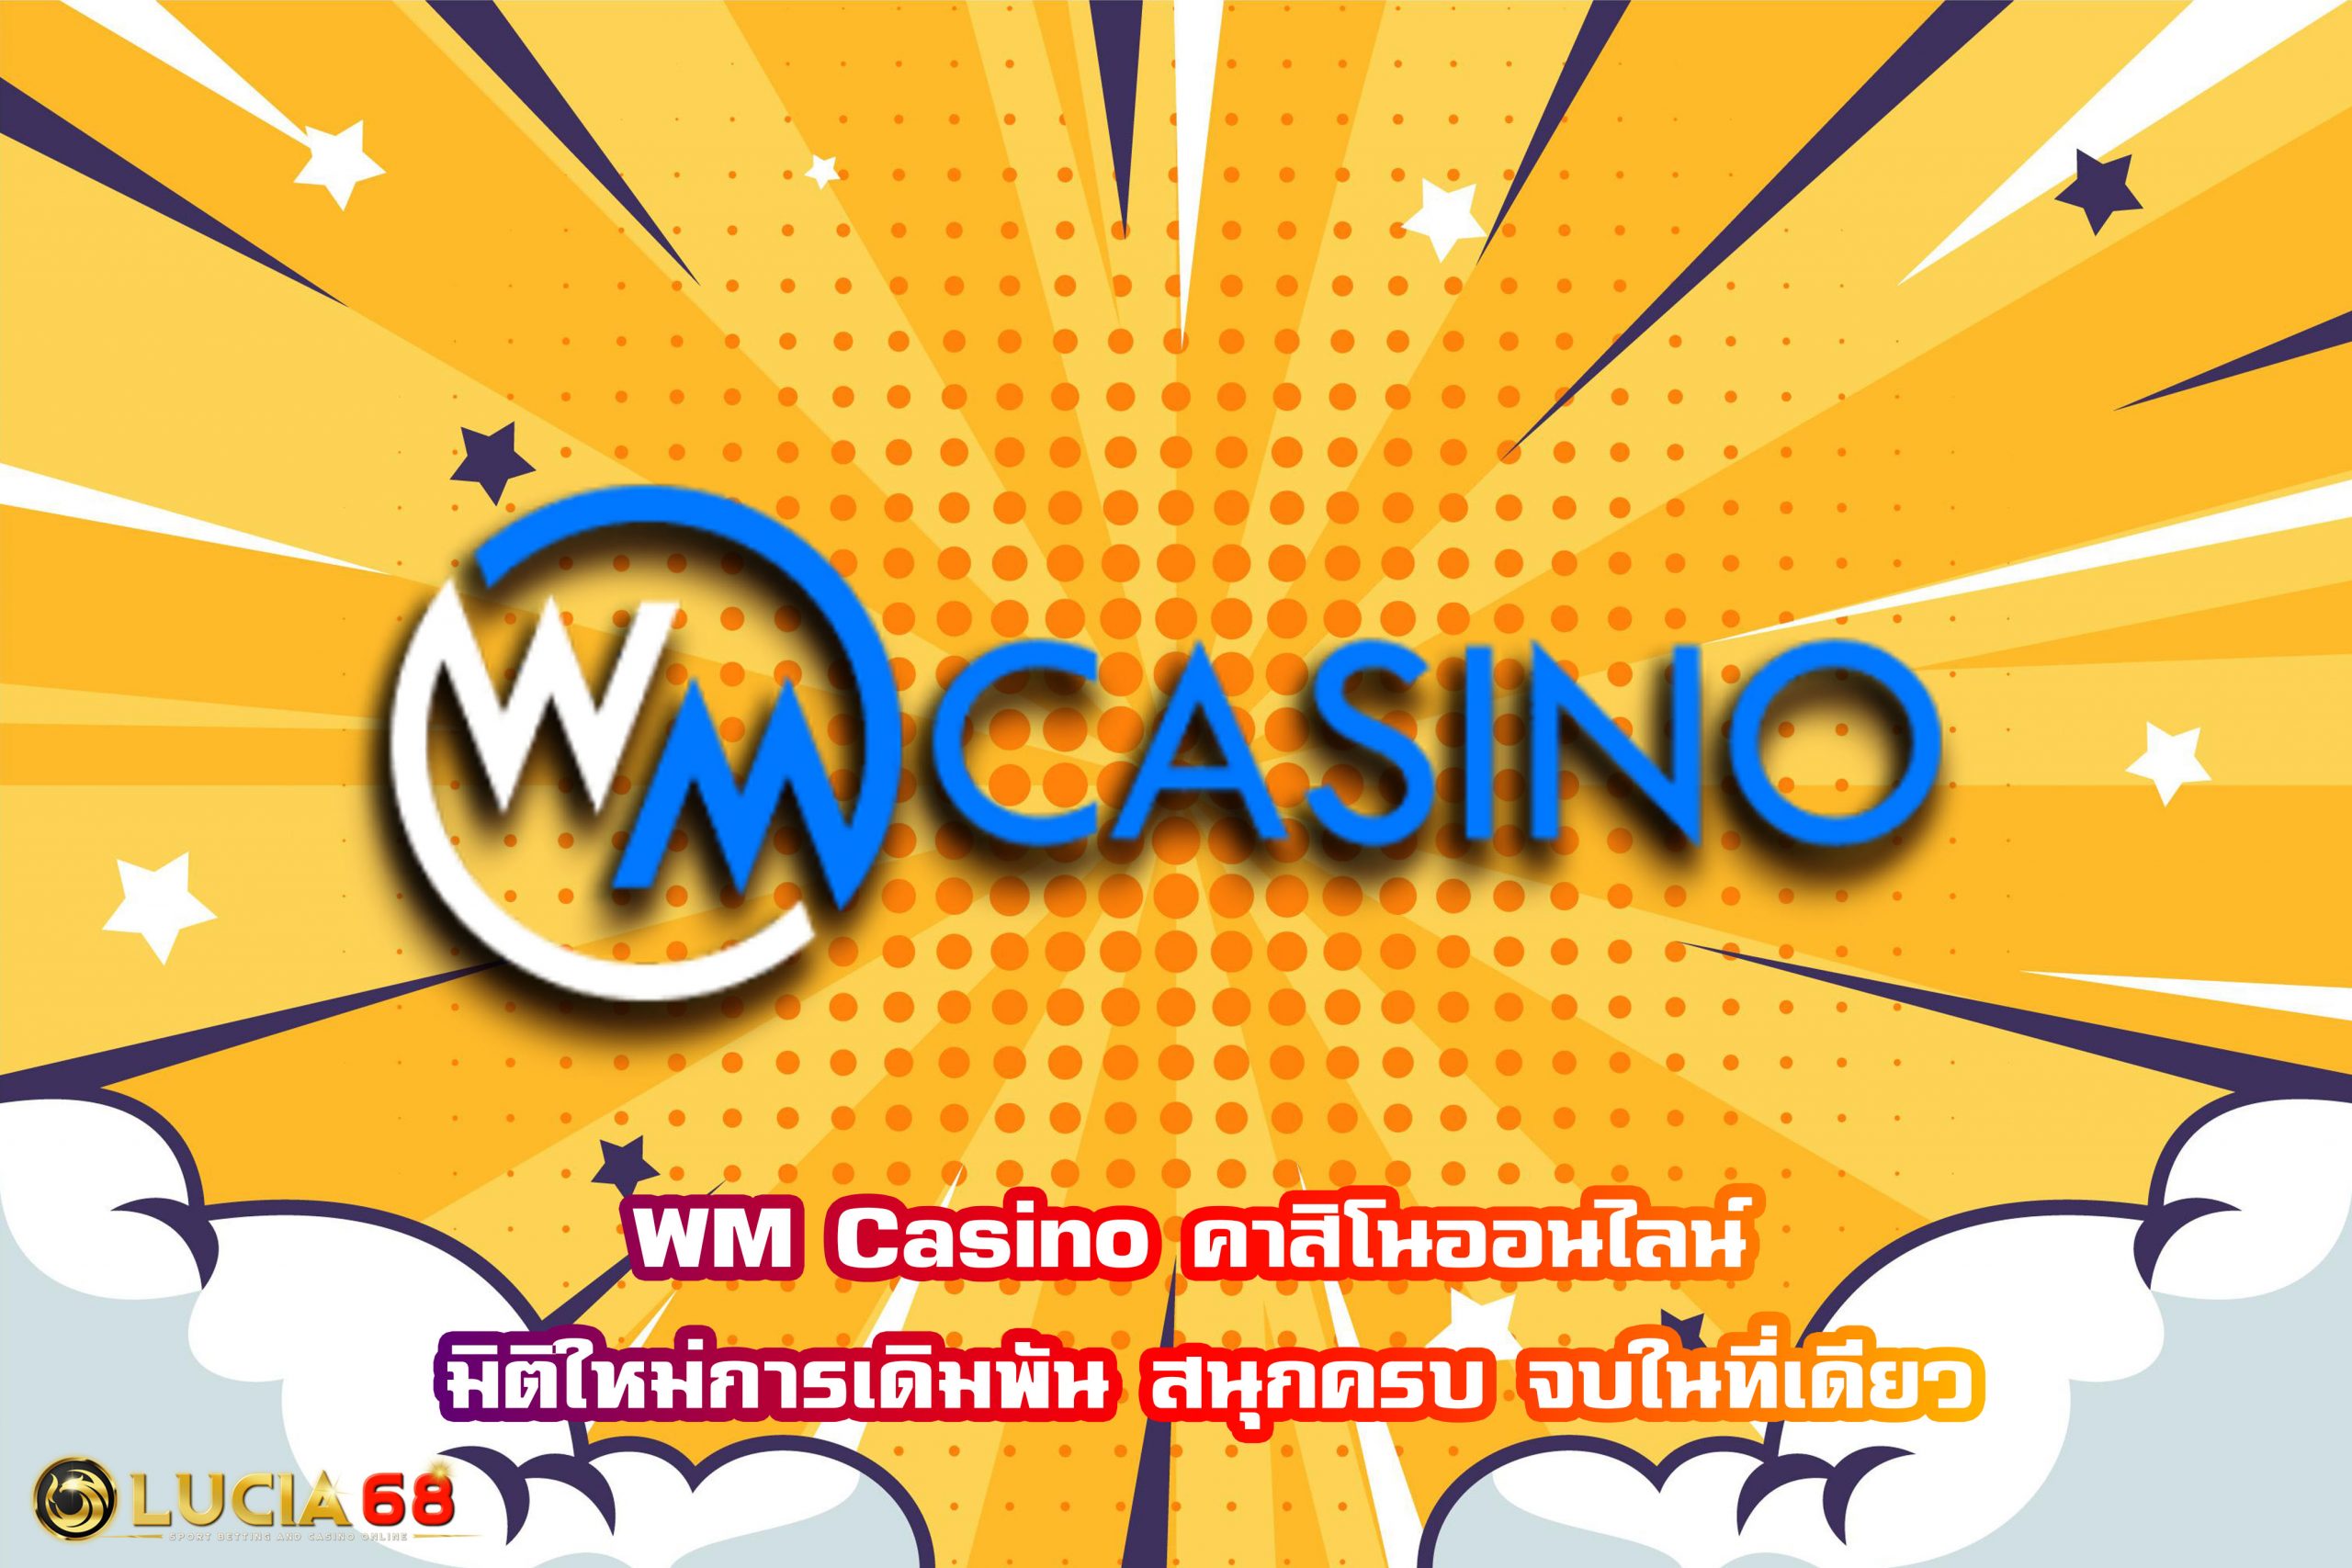 WM Casino คาสิโนออนไลน์ มิติใหม่การเดิมพัน สนุกครบ จบในที่เดียว